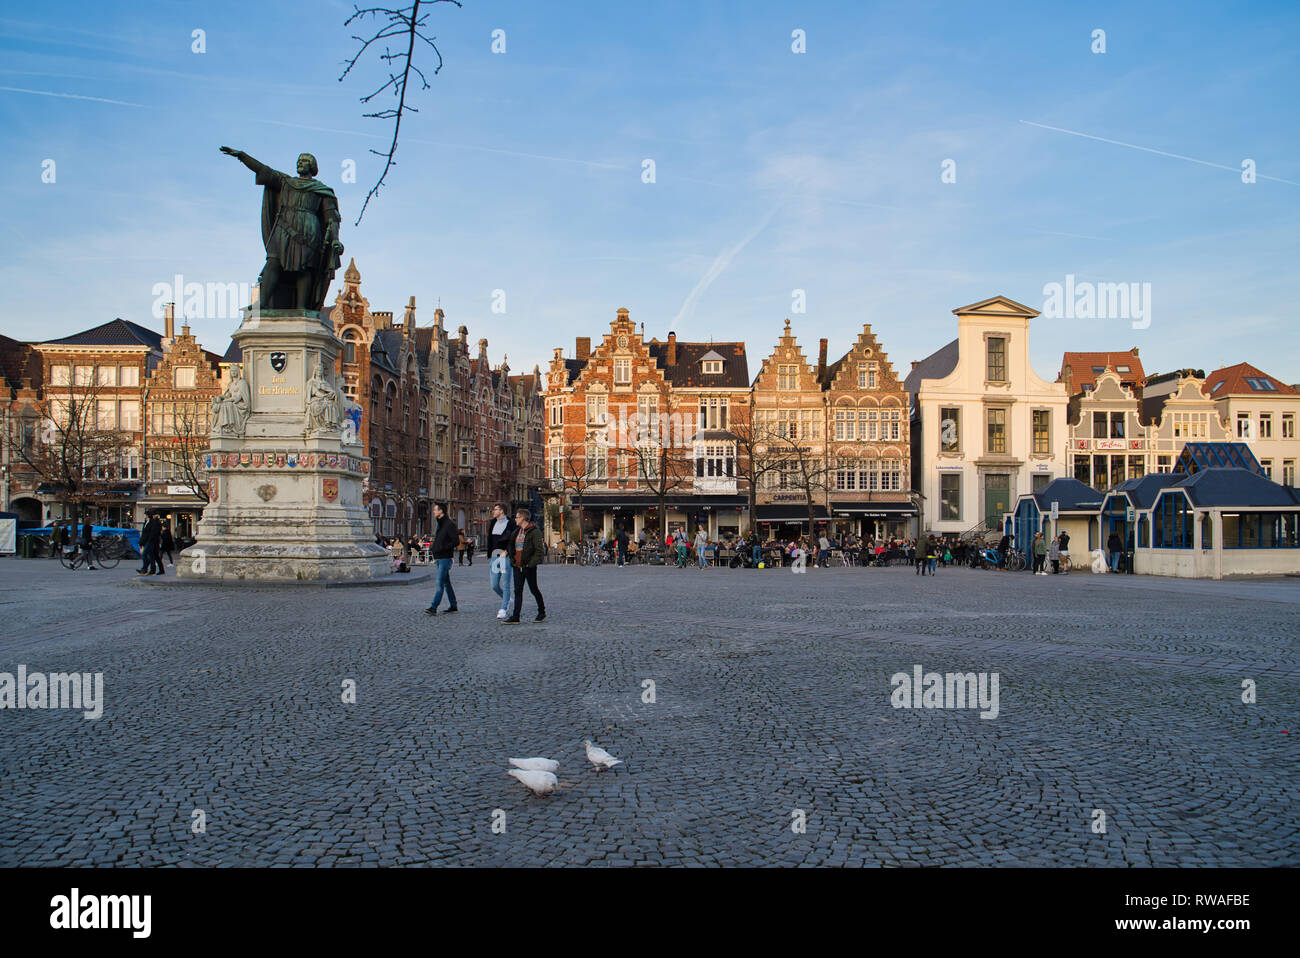 GENT, Belgio - 17 febbraio 2019: Il Venerdì la piazza del mercato, centrato su un monumento dedicato a Jacob van Arteveld - il leader del XIV secolo a Foto Stock